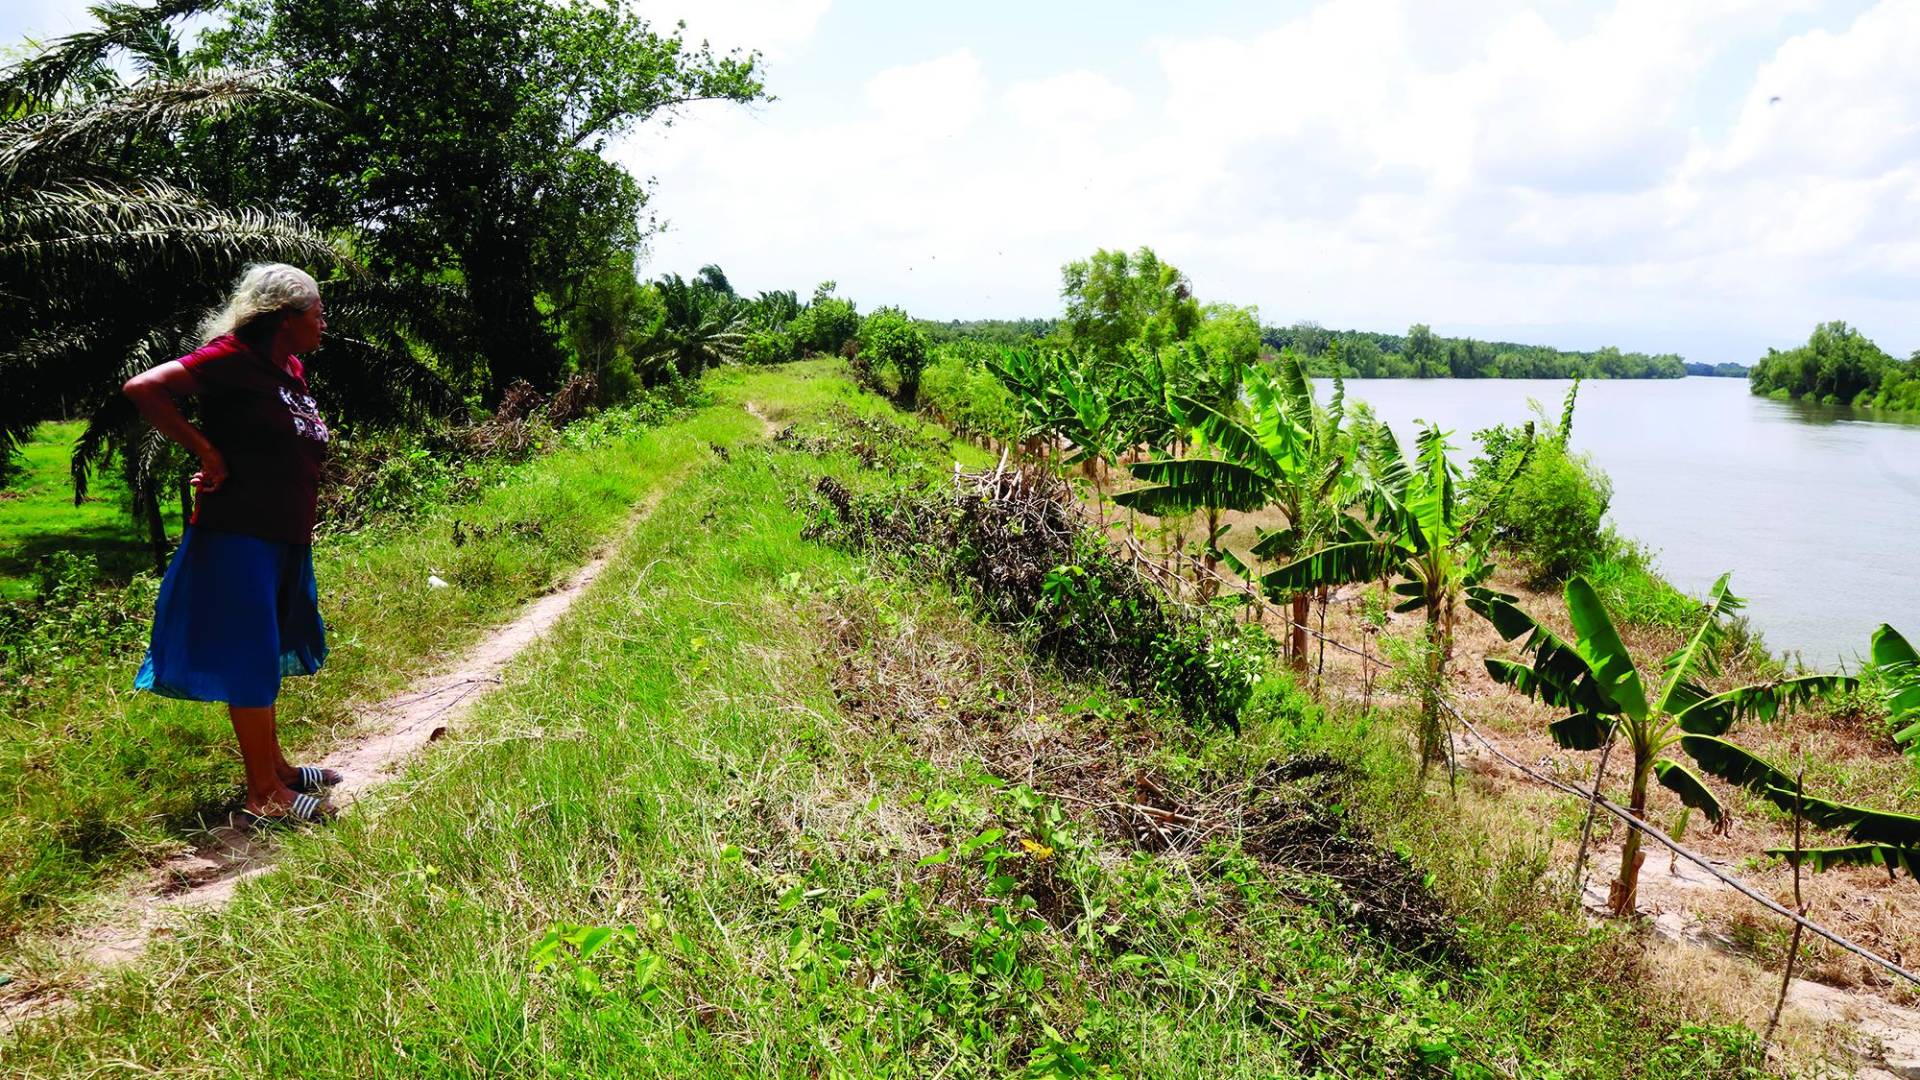 $!El río Ulúa ha afectado el bordo, por lo que desde hace varios años los vecinos de Amapa han solicitado el reforzamiento con gaviones.